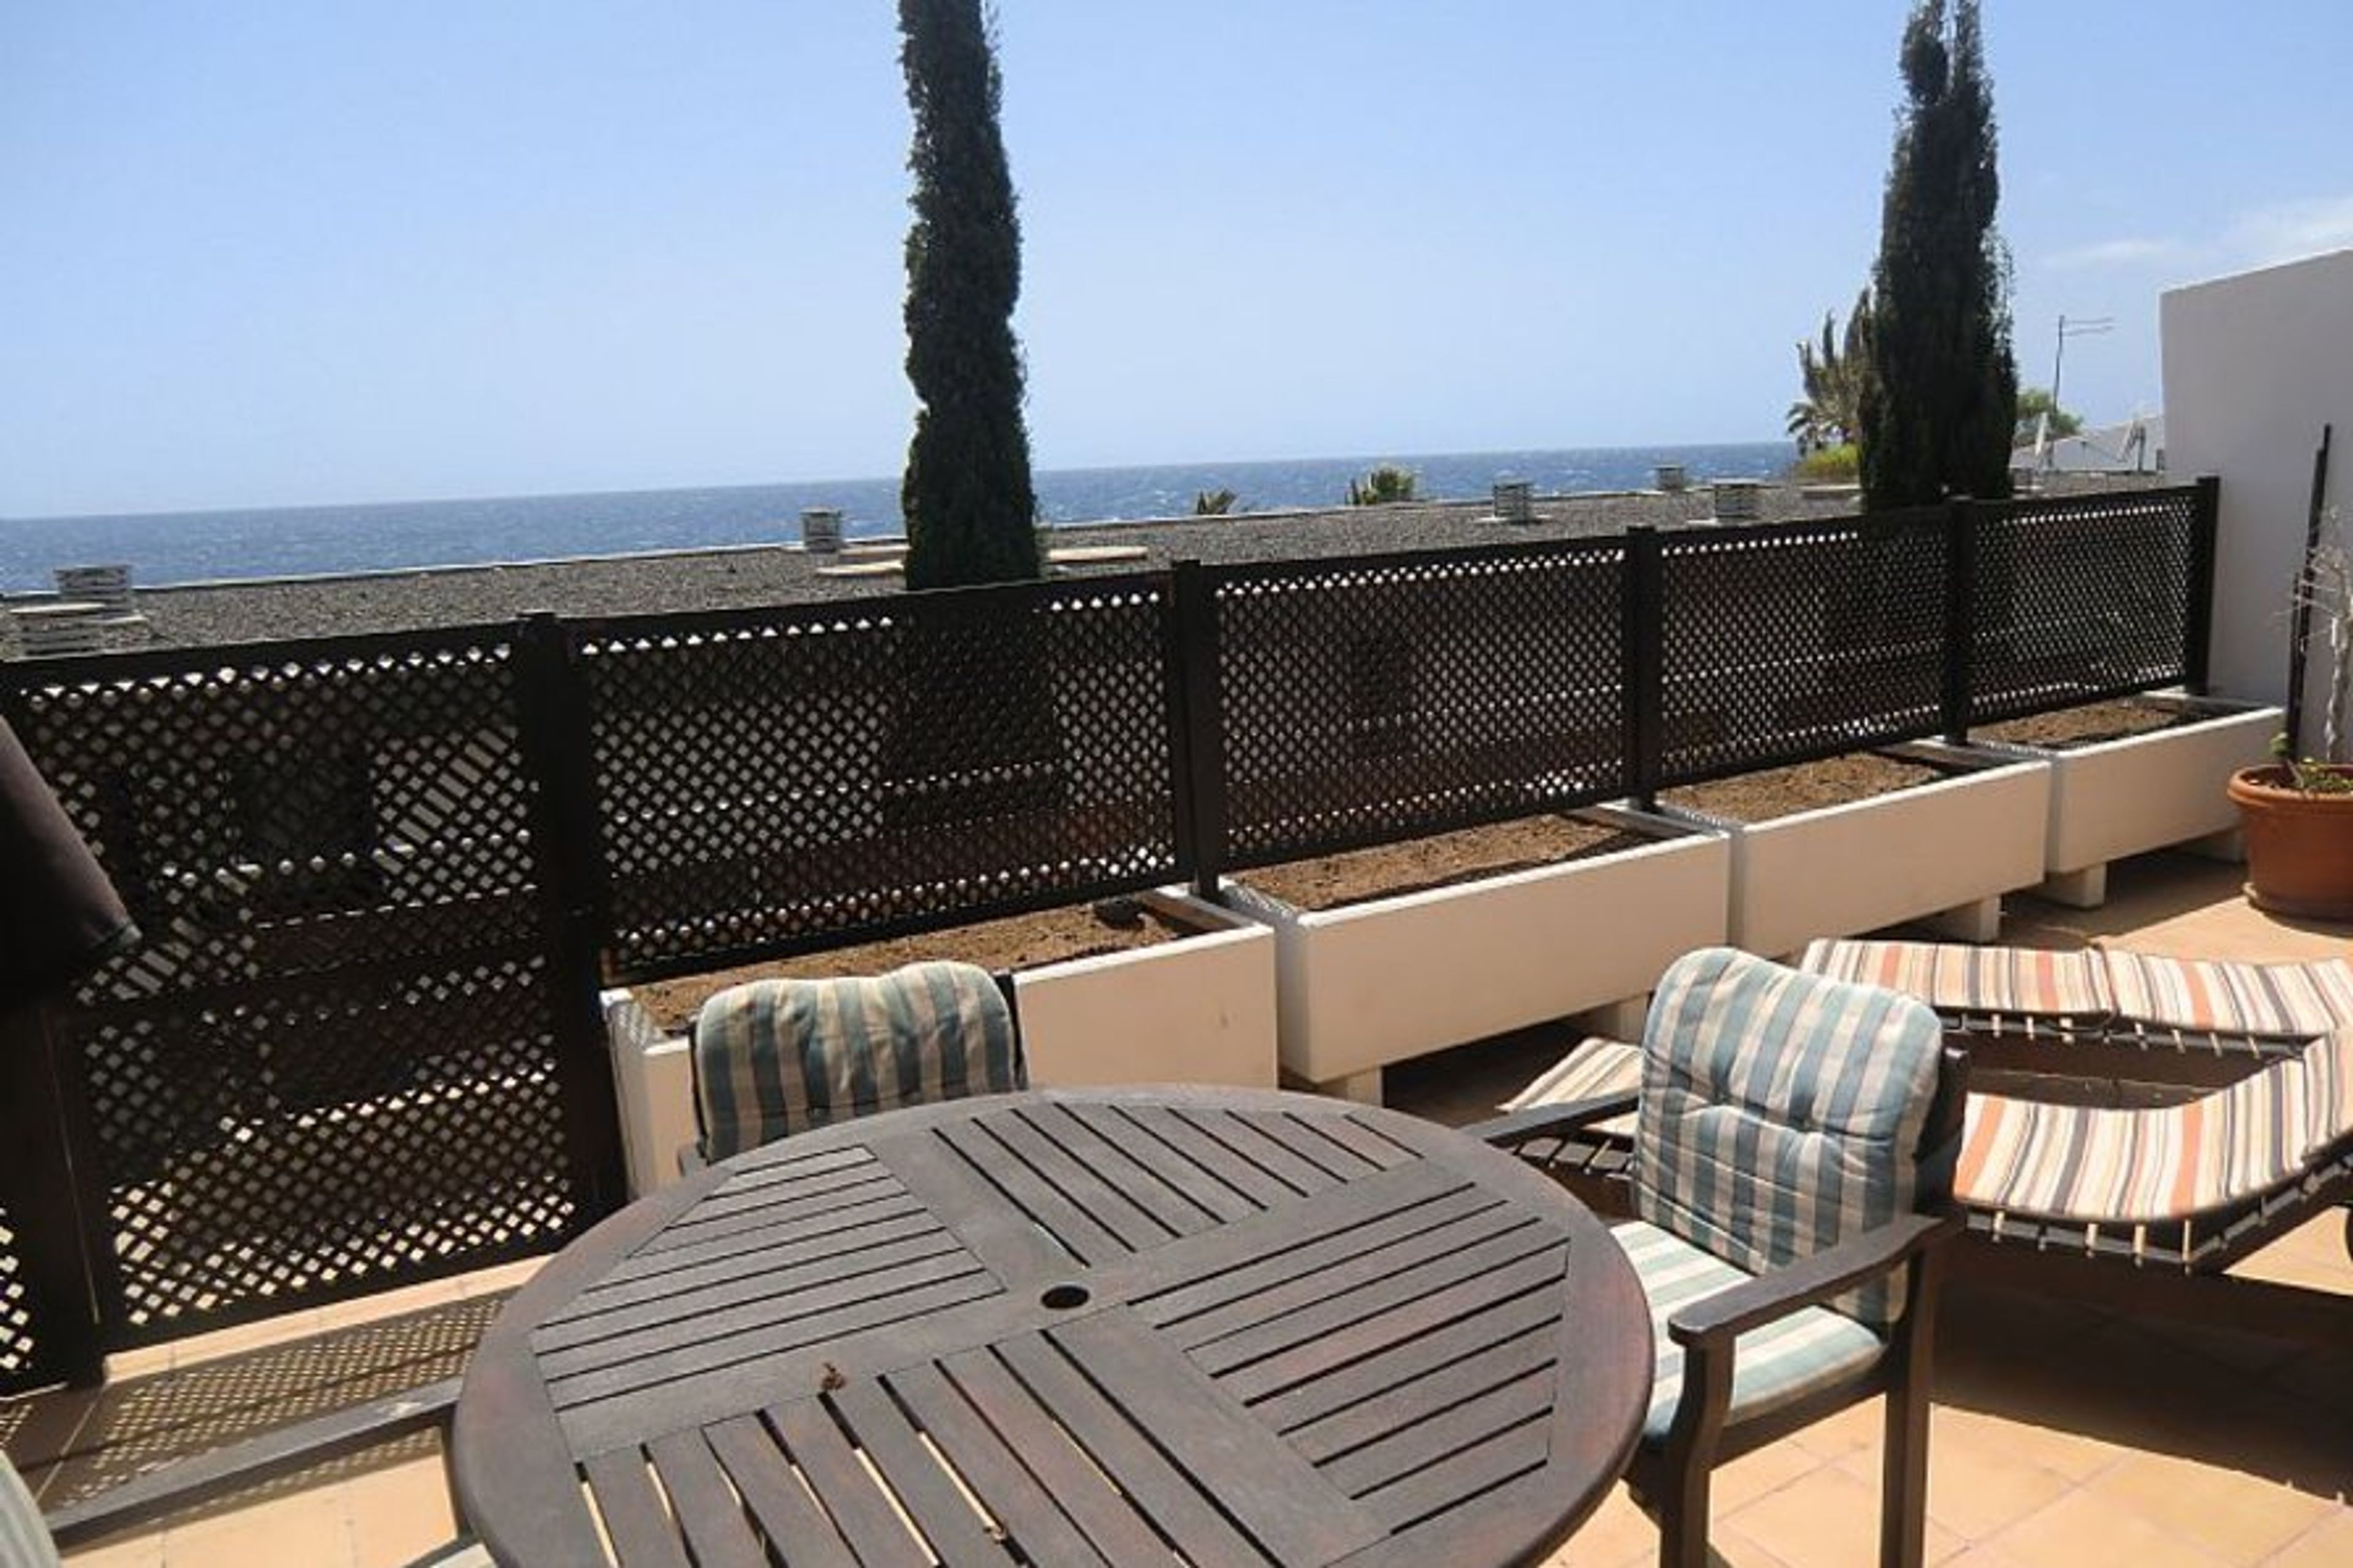 Lovely sunny balcony with sea views